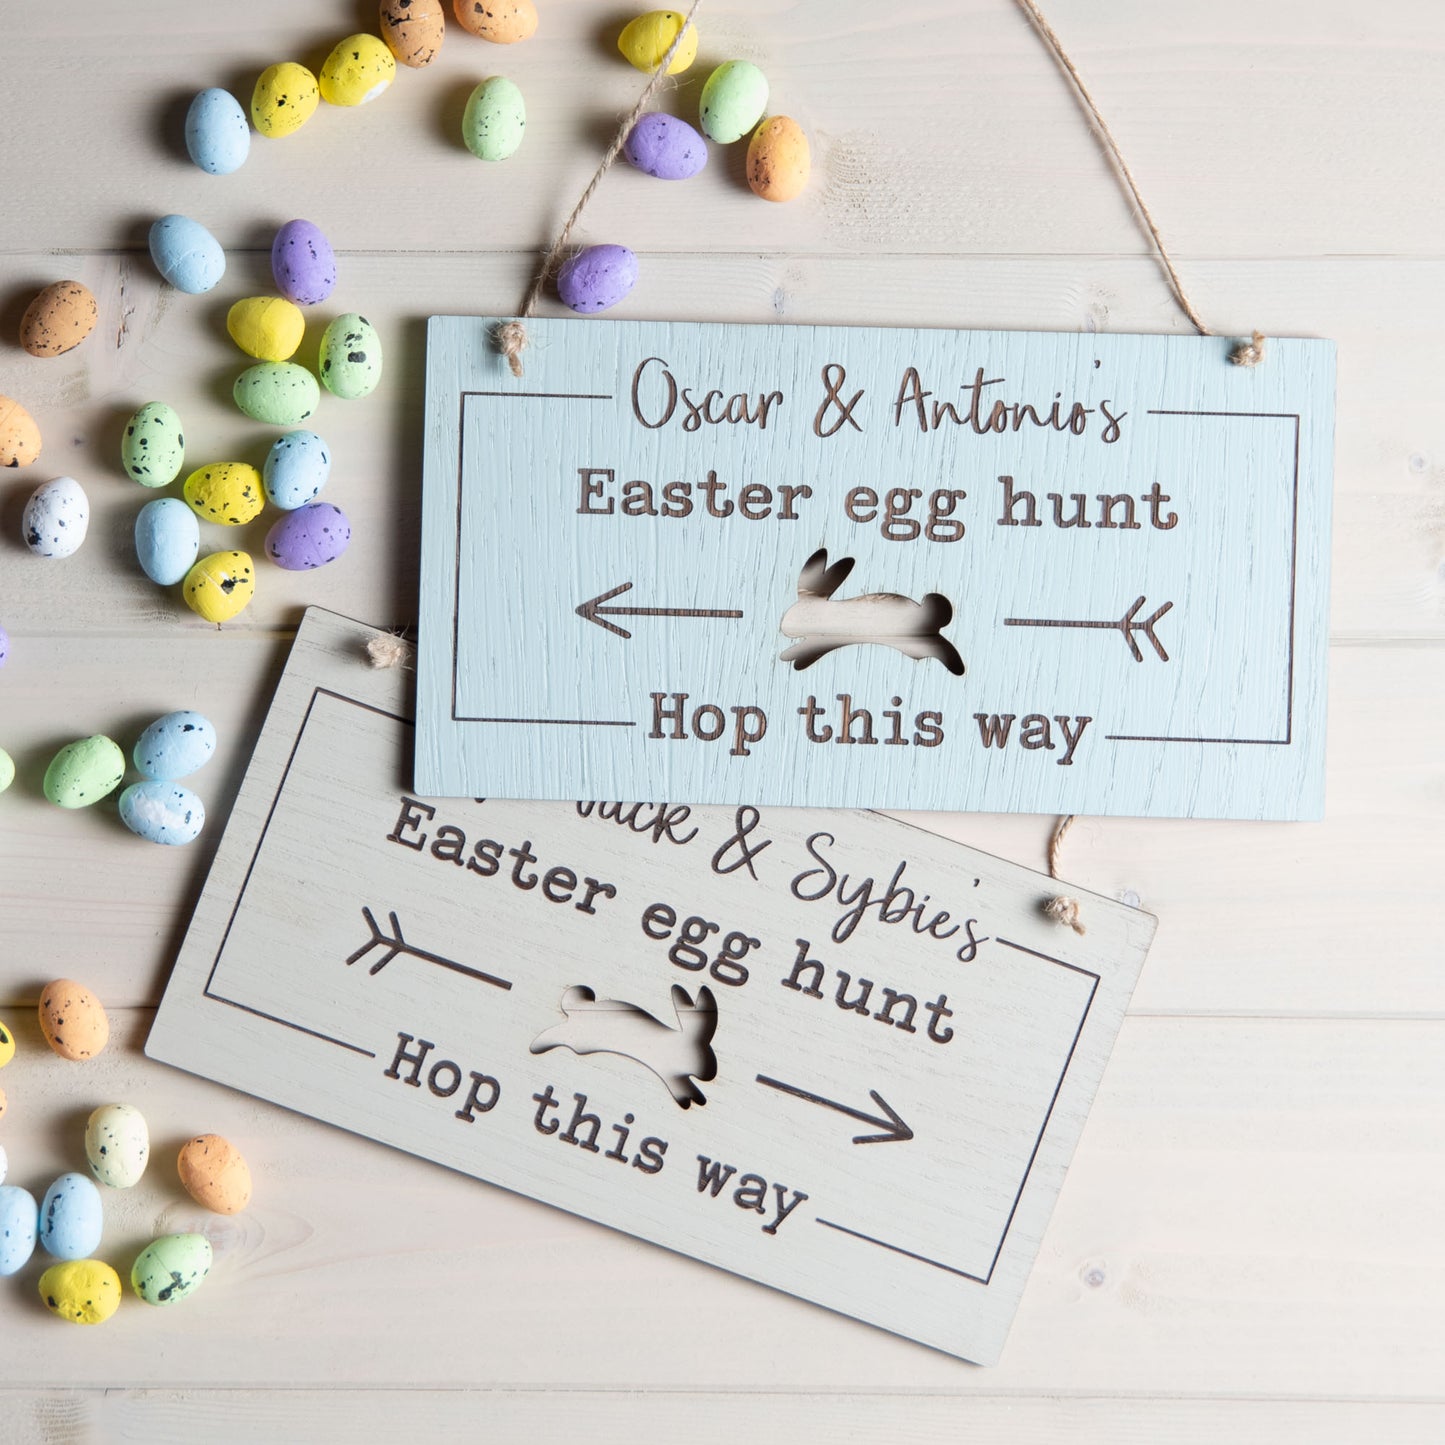 Easter Egg Hunt Sign